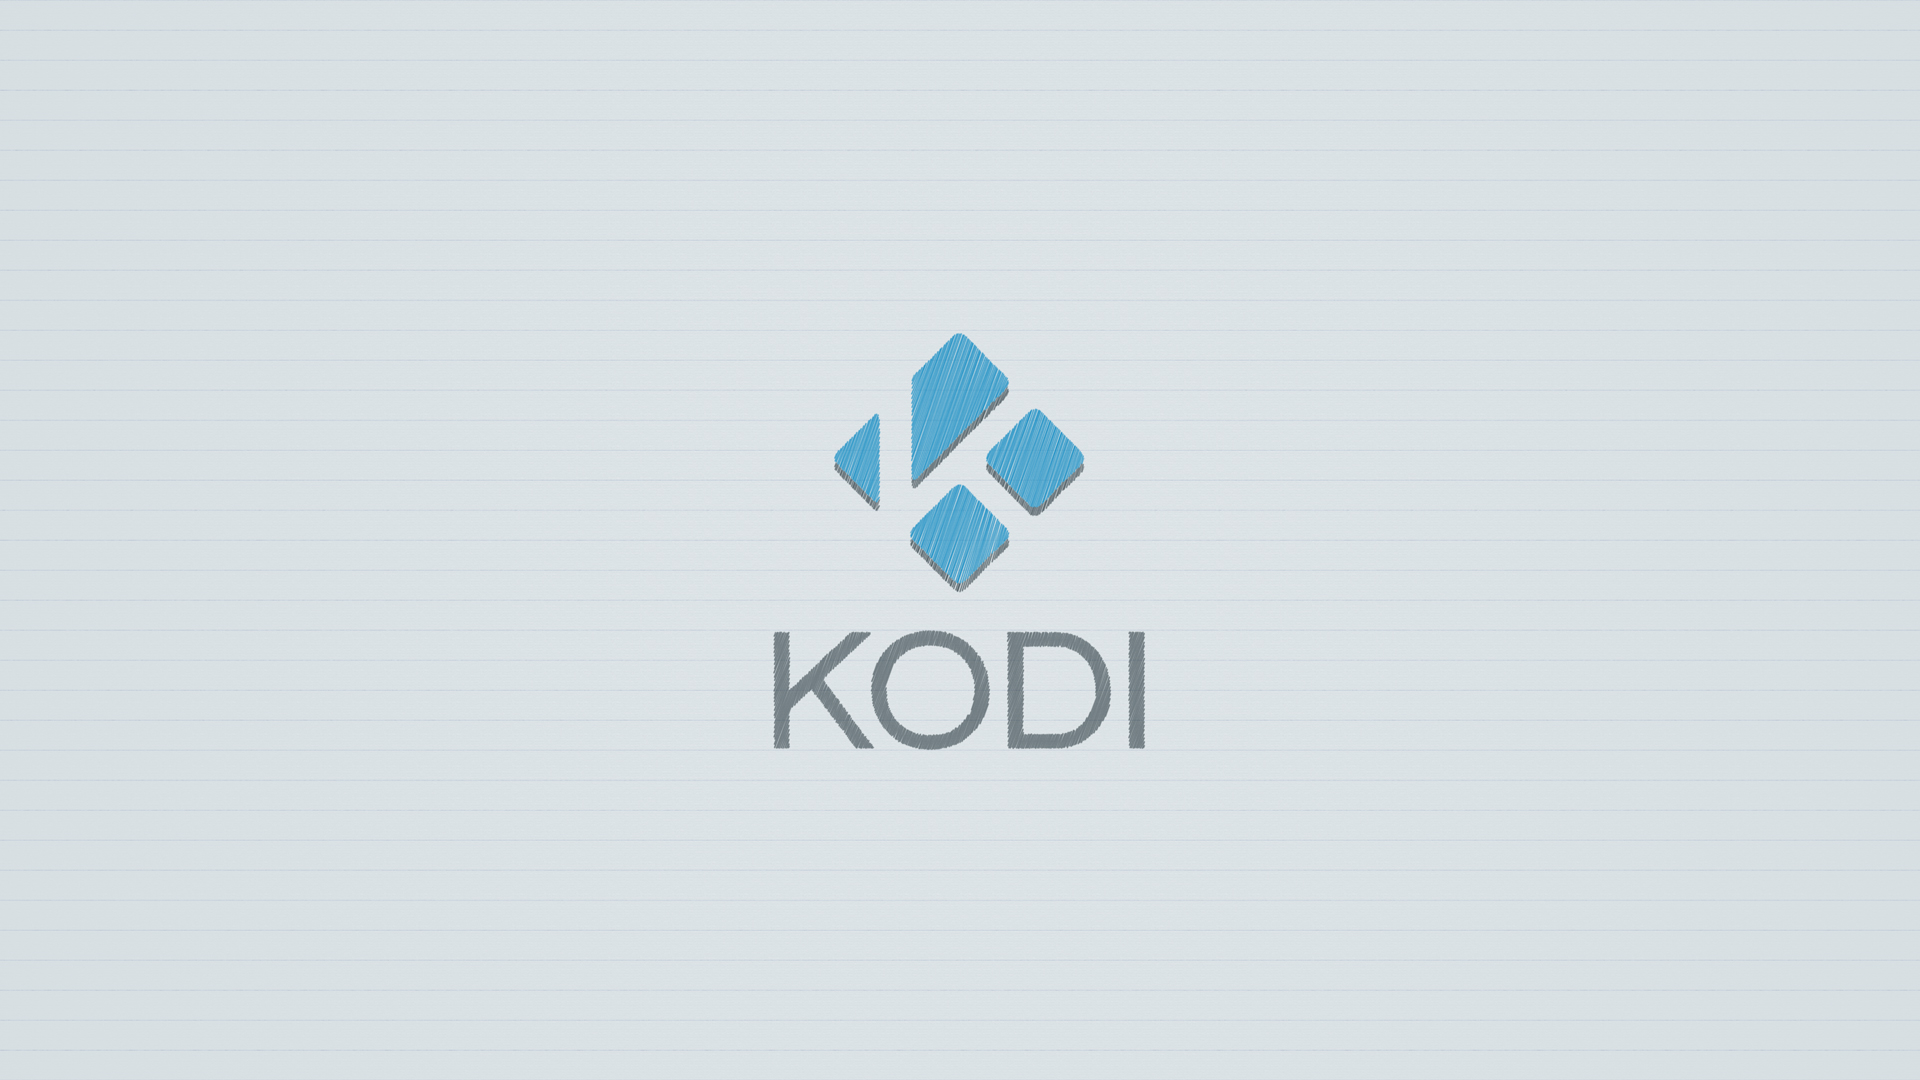 Kodi-Wallpaper-8A-1080p samfisher.jpg